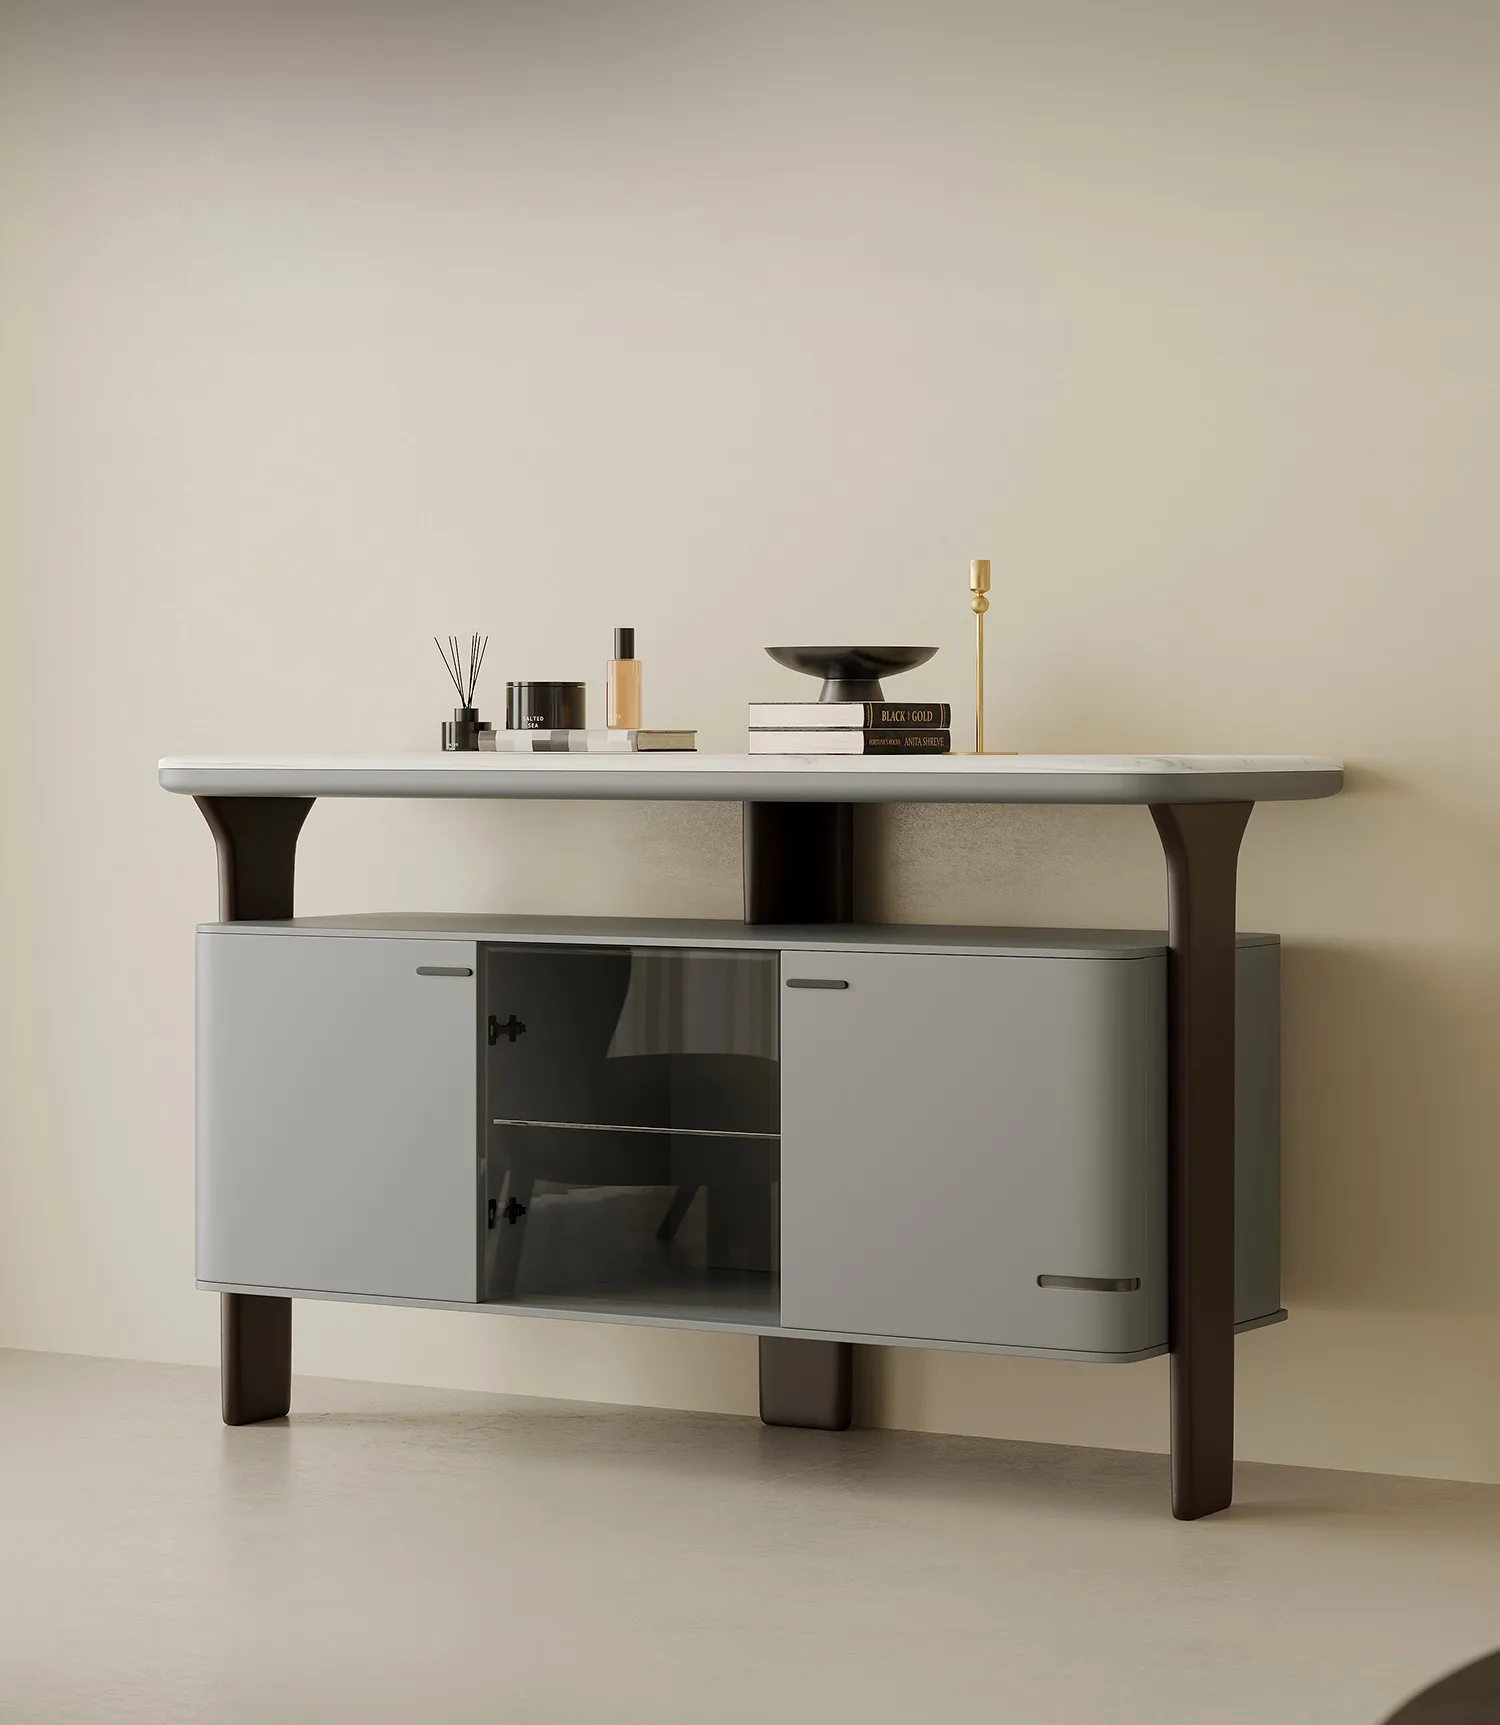 Модерен и минималистичен мрамор шкаф за съхранение на вещи за домашно използване, с висока стена шкаф и маса за странично шкафче1